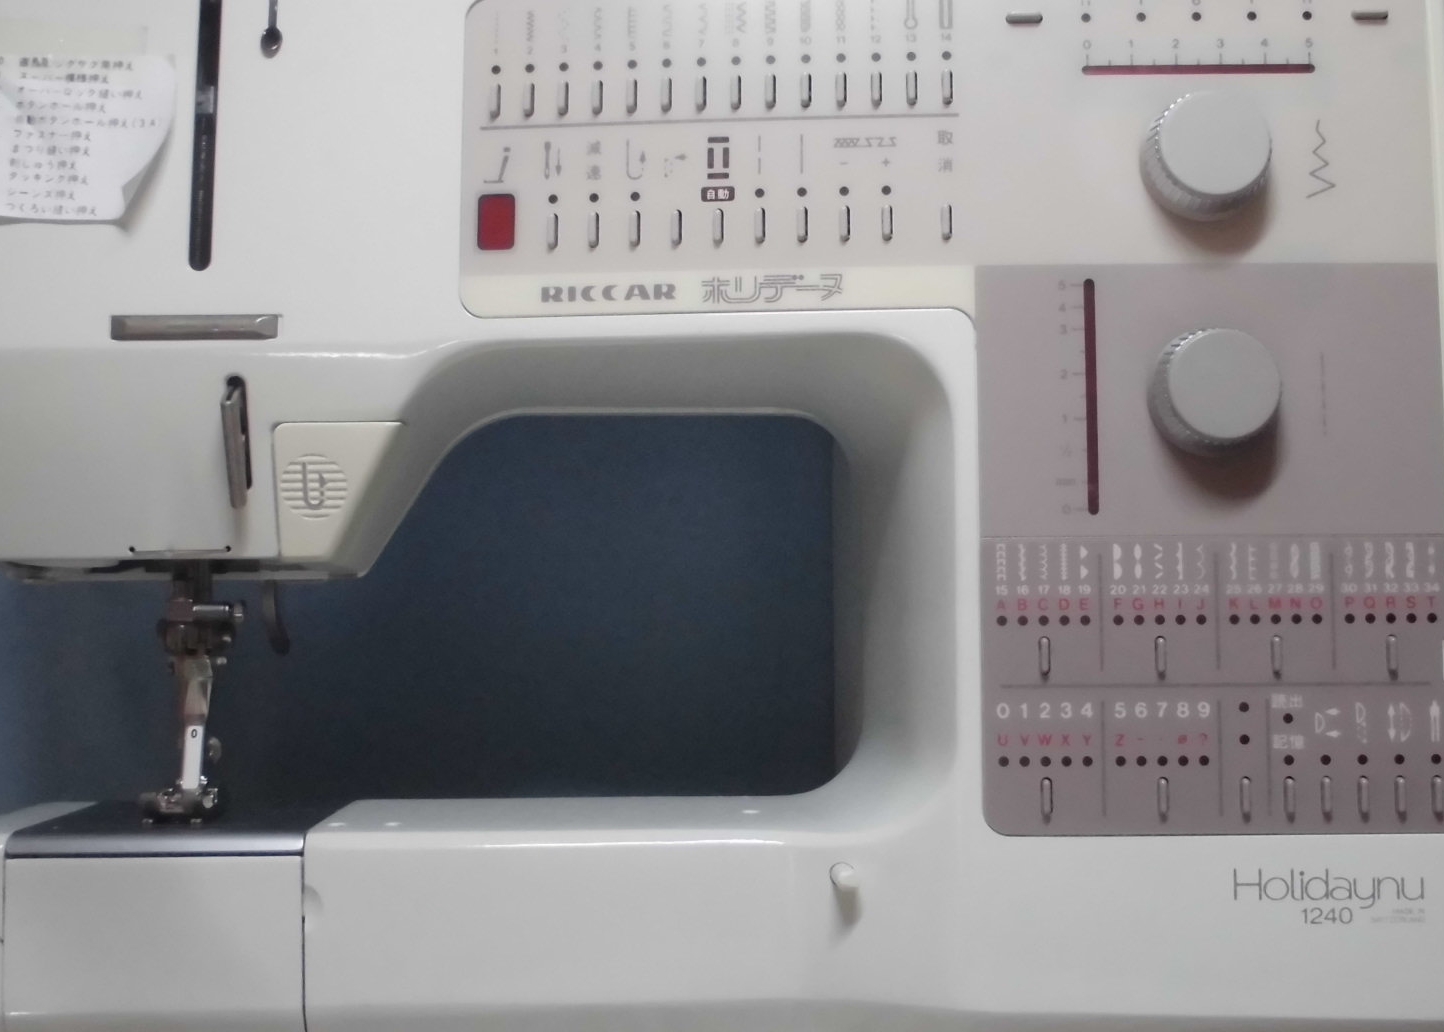 リッカーミシン修理｜ホリデーヌ1240｜返し縫いしかしない、逆送する、ボタンがきかない